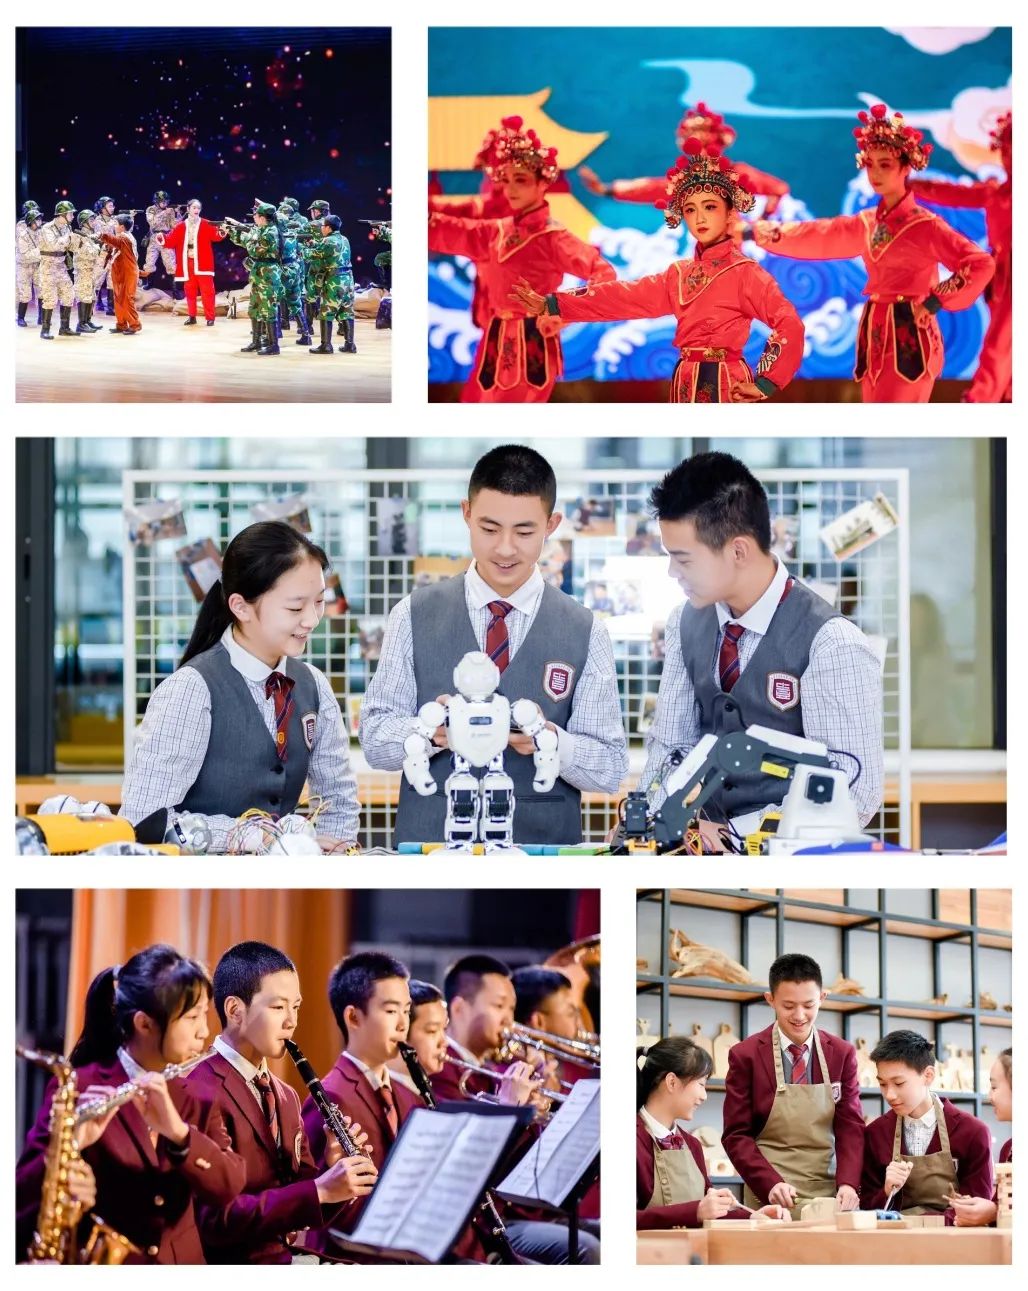 金苹果锦城第一中学2020年小升初招生简章